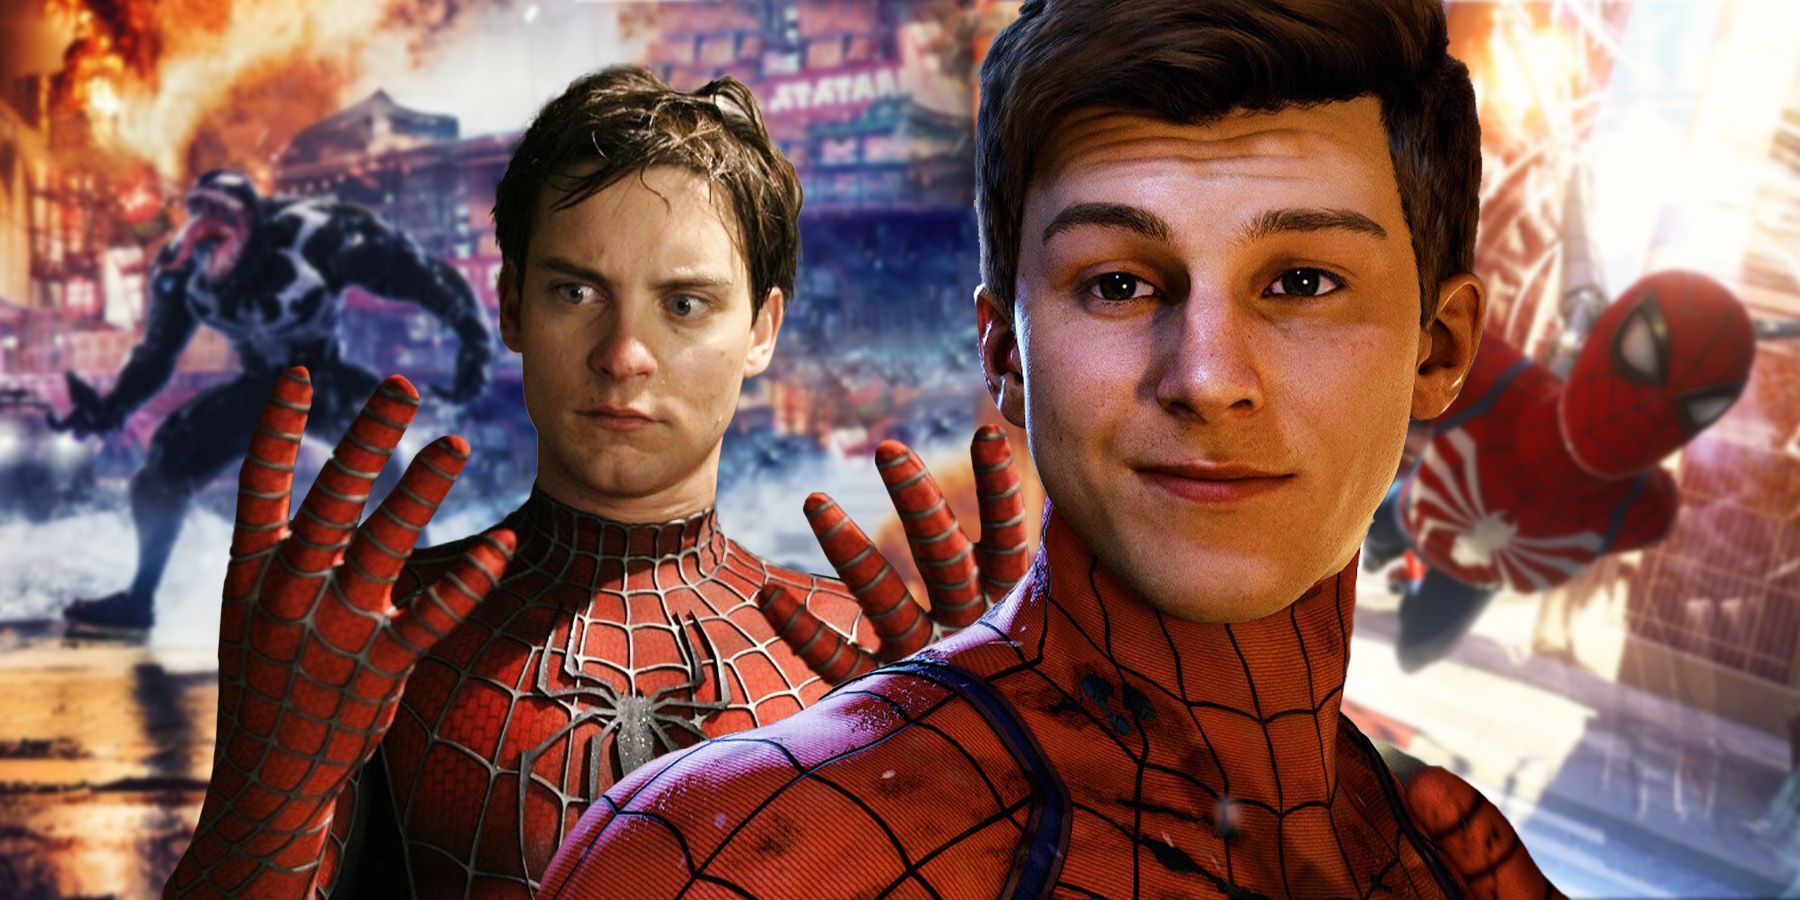 La escena de la película Spider-Man recreada en un juego de Marvel demuestra que Tobey Maguire lo hizo mejor